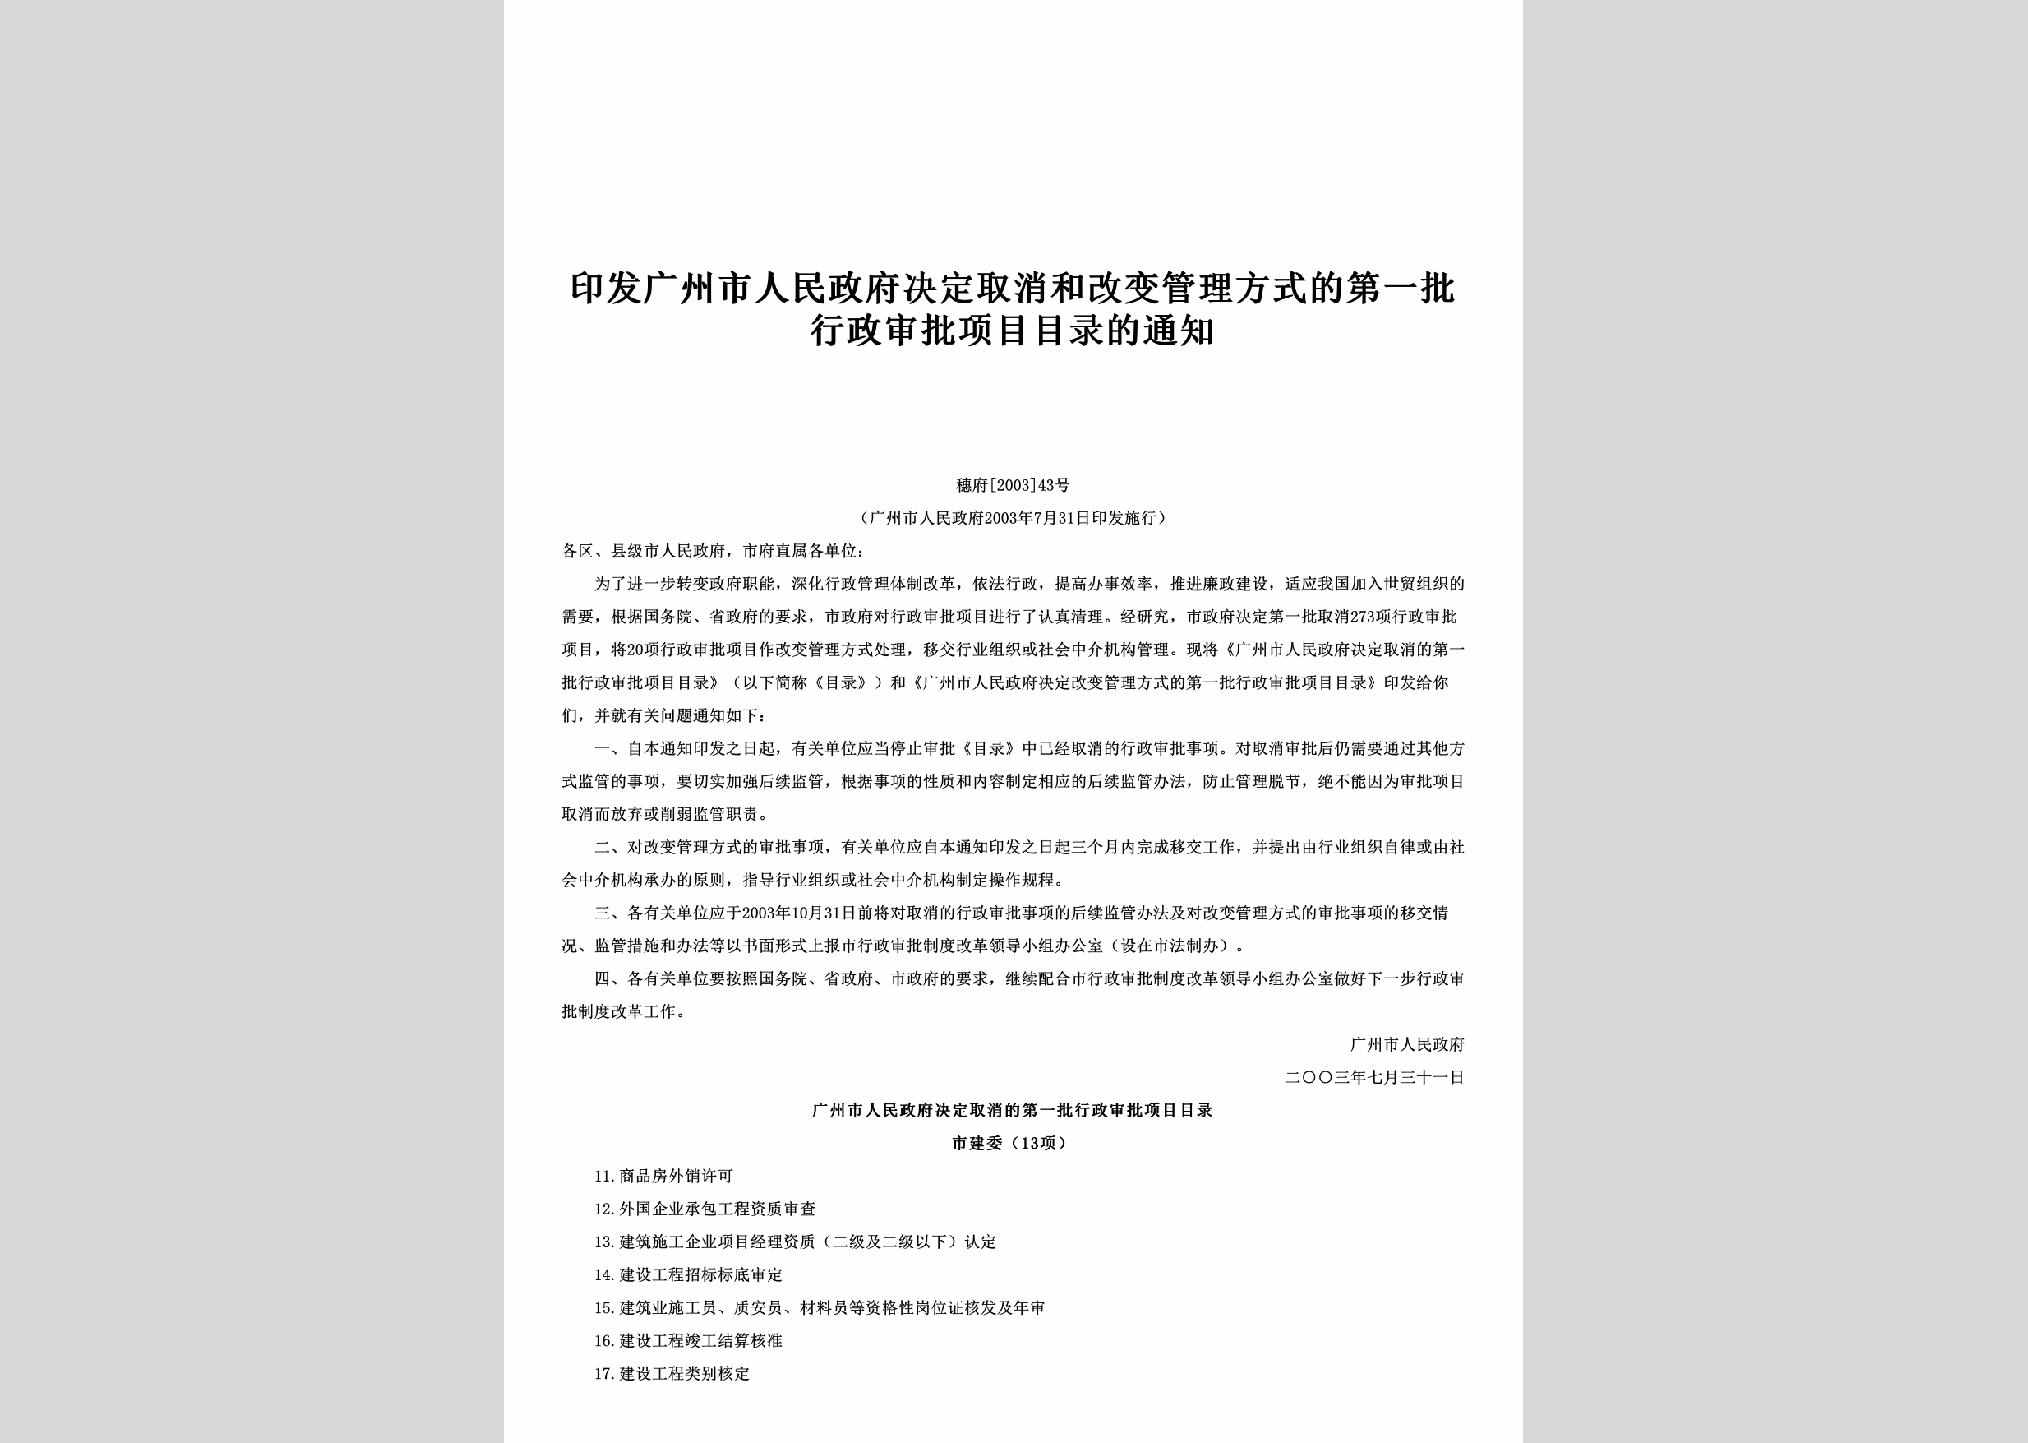 穗府[2003]43号：印发广州市人民政府决定取消和改变管理方式的第一批行政审批项目目录的通知